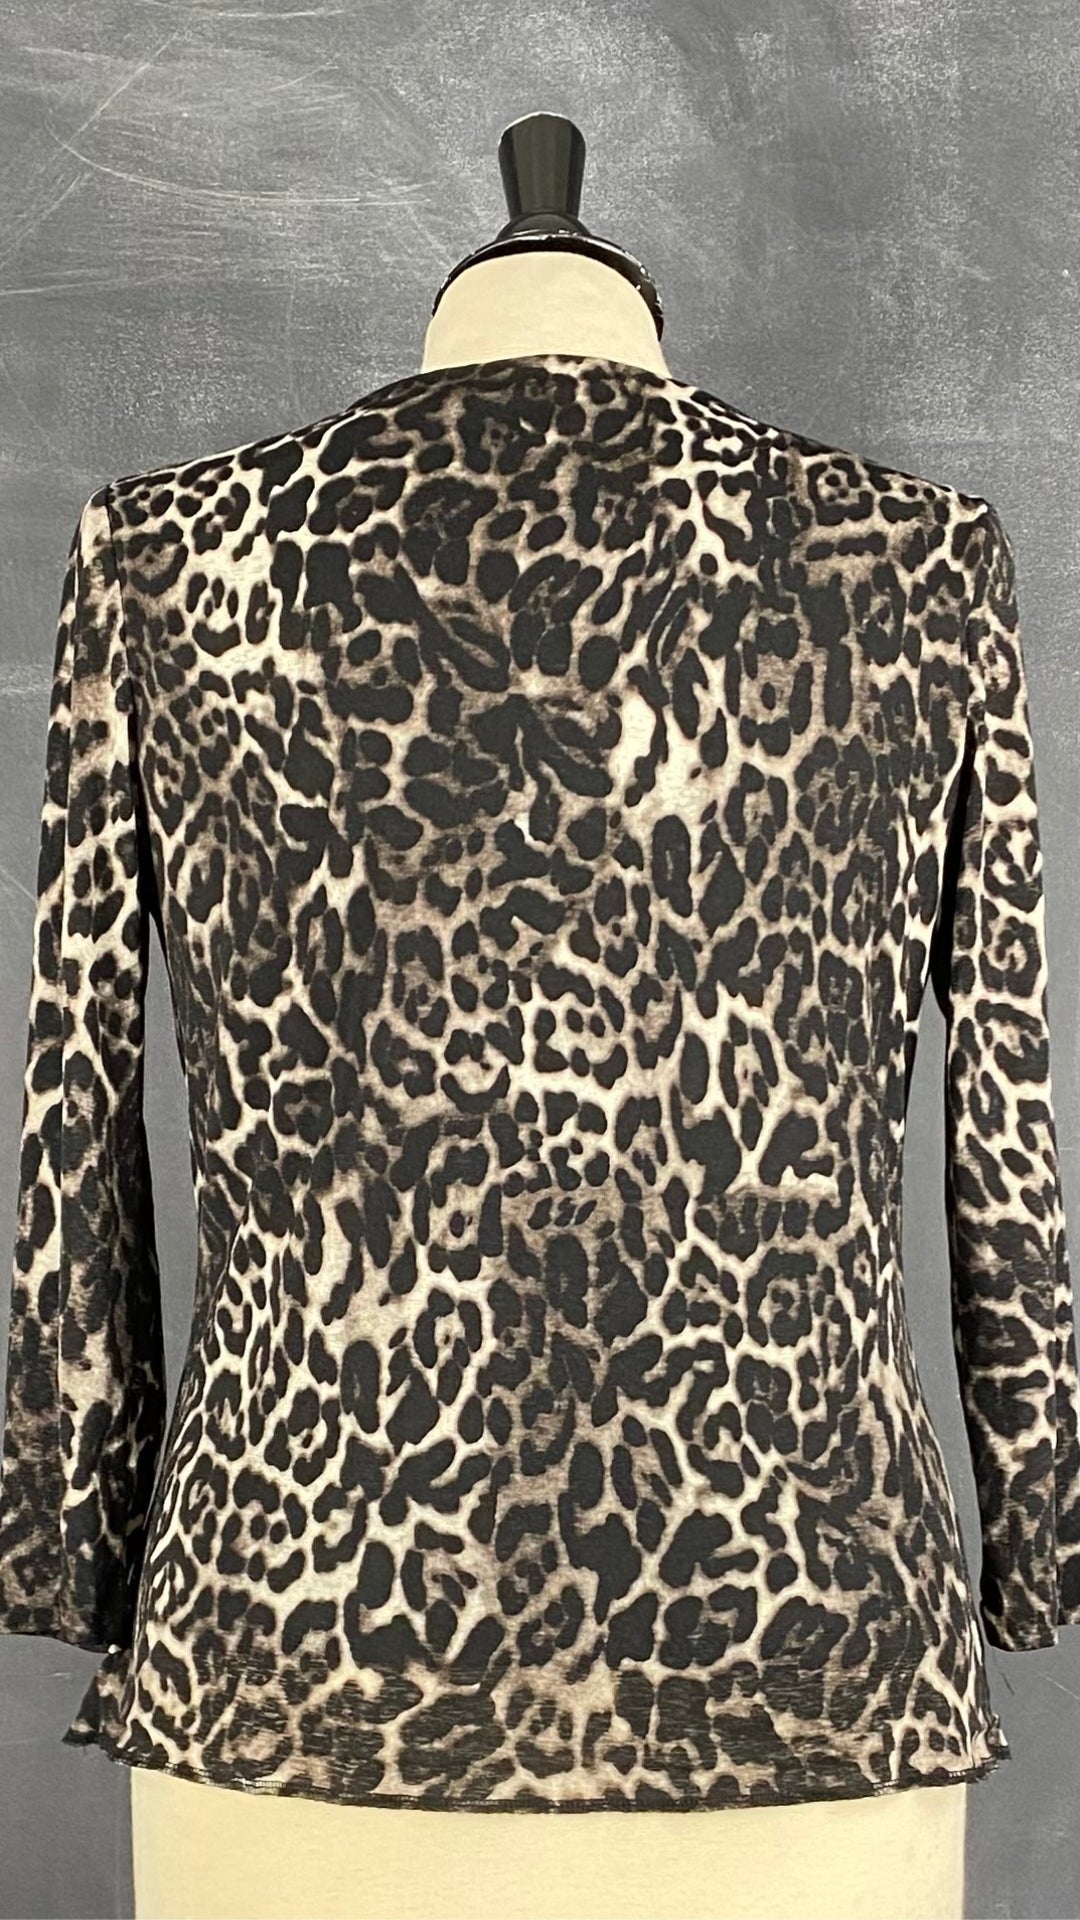 Chandail léger à motif léopard Jones New York, taille small. Vue de dos.